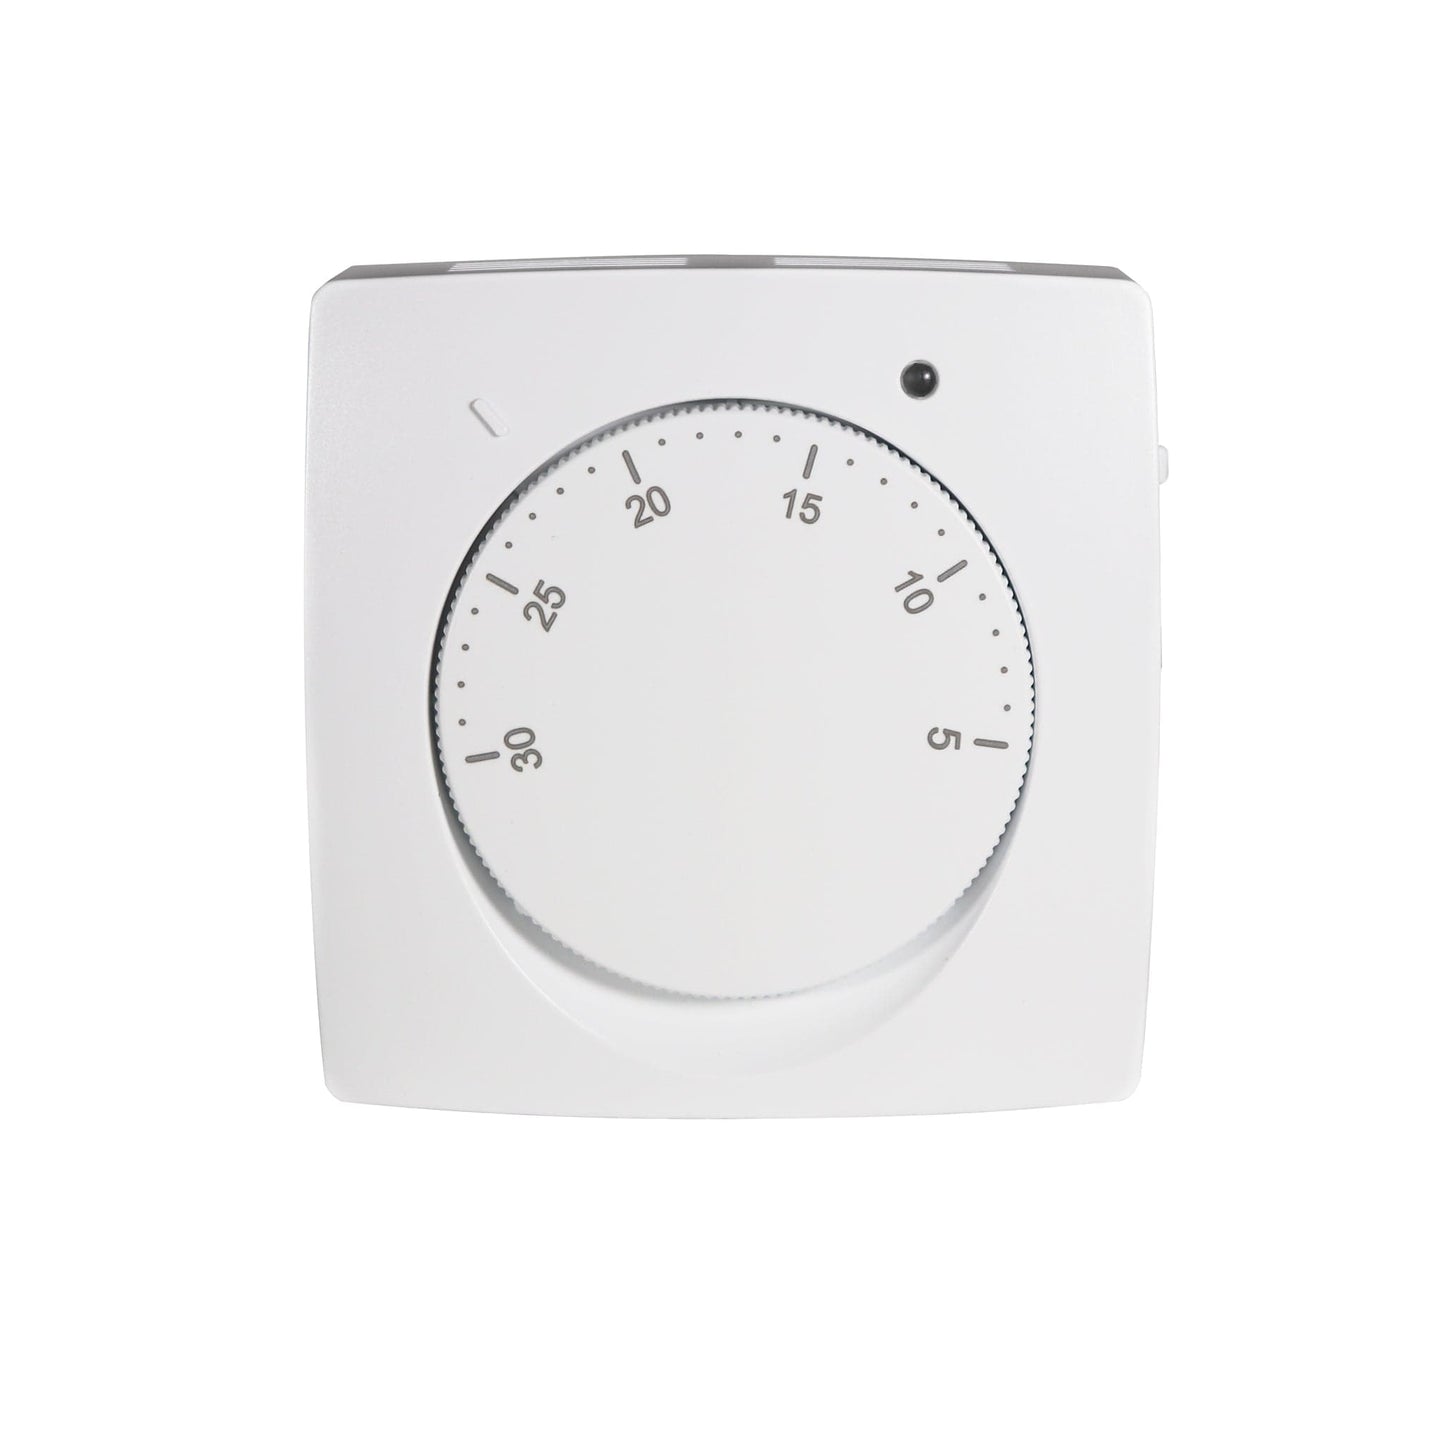 Tio Temperature Dial Thermostat 230v | TIODIA002 BM01771